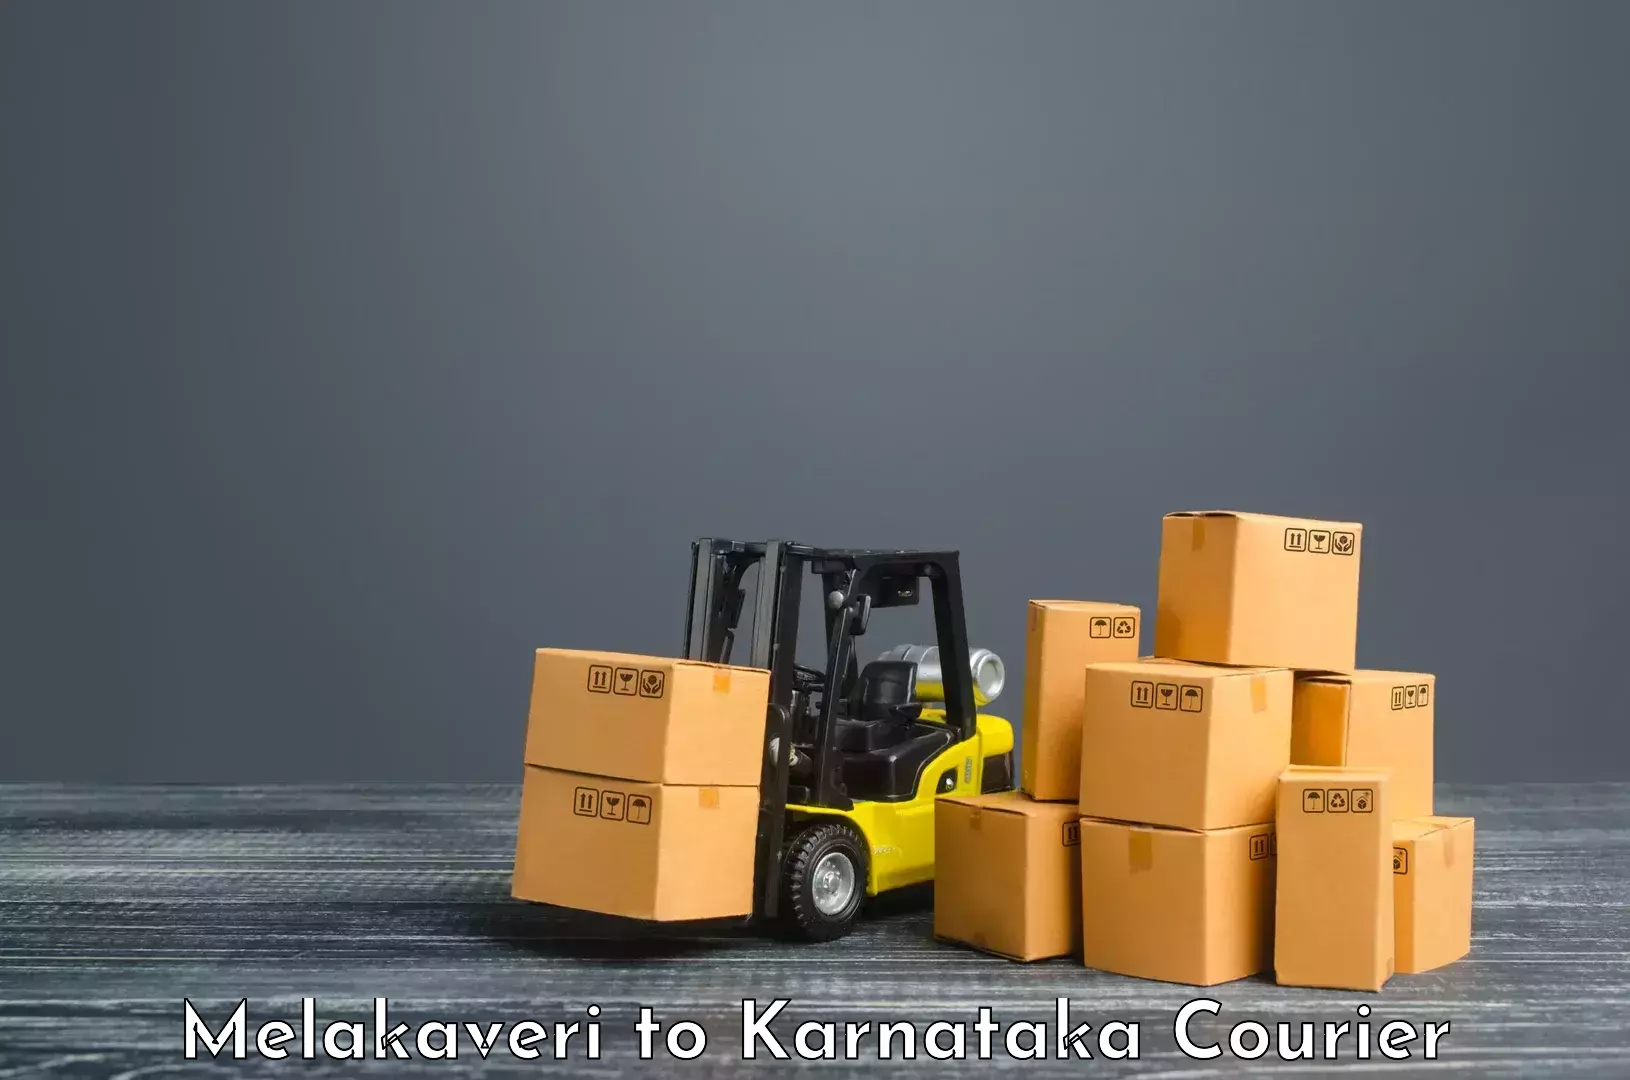 Professional courier handling Melakaveri to Kudligi